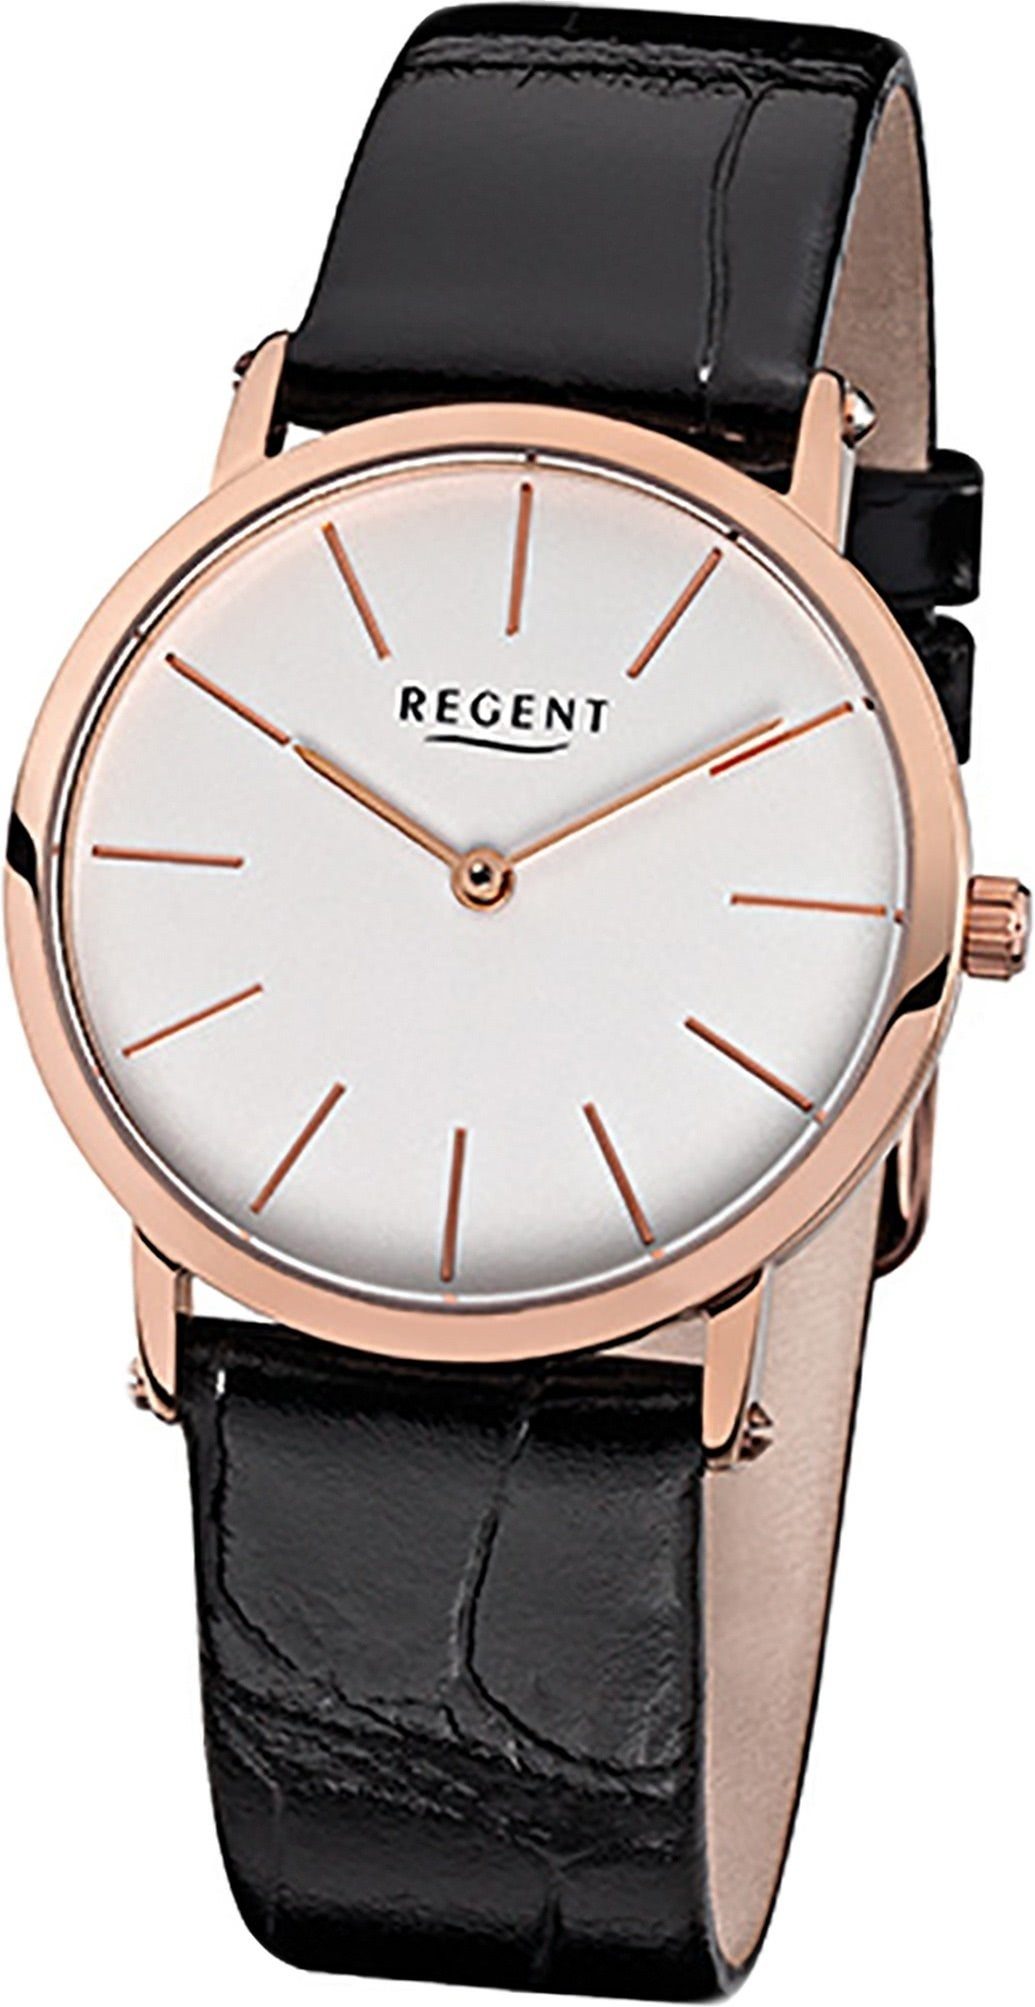 Regent Quarzuhr Regent Leder Damen Uhr F-831 Quarzuhr, Damenuhr Lederarmband schwarz, rundes Gehäuse, mittel (ca. 33mm)